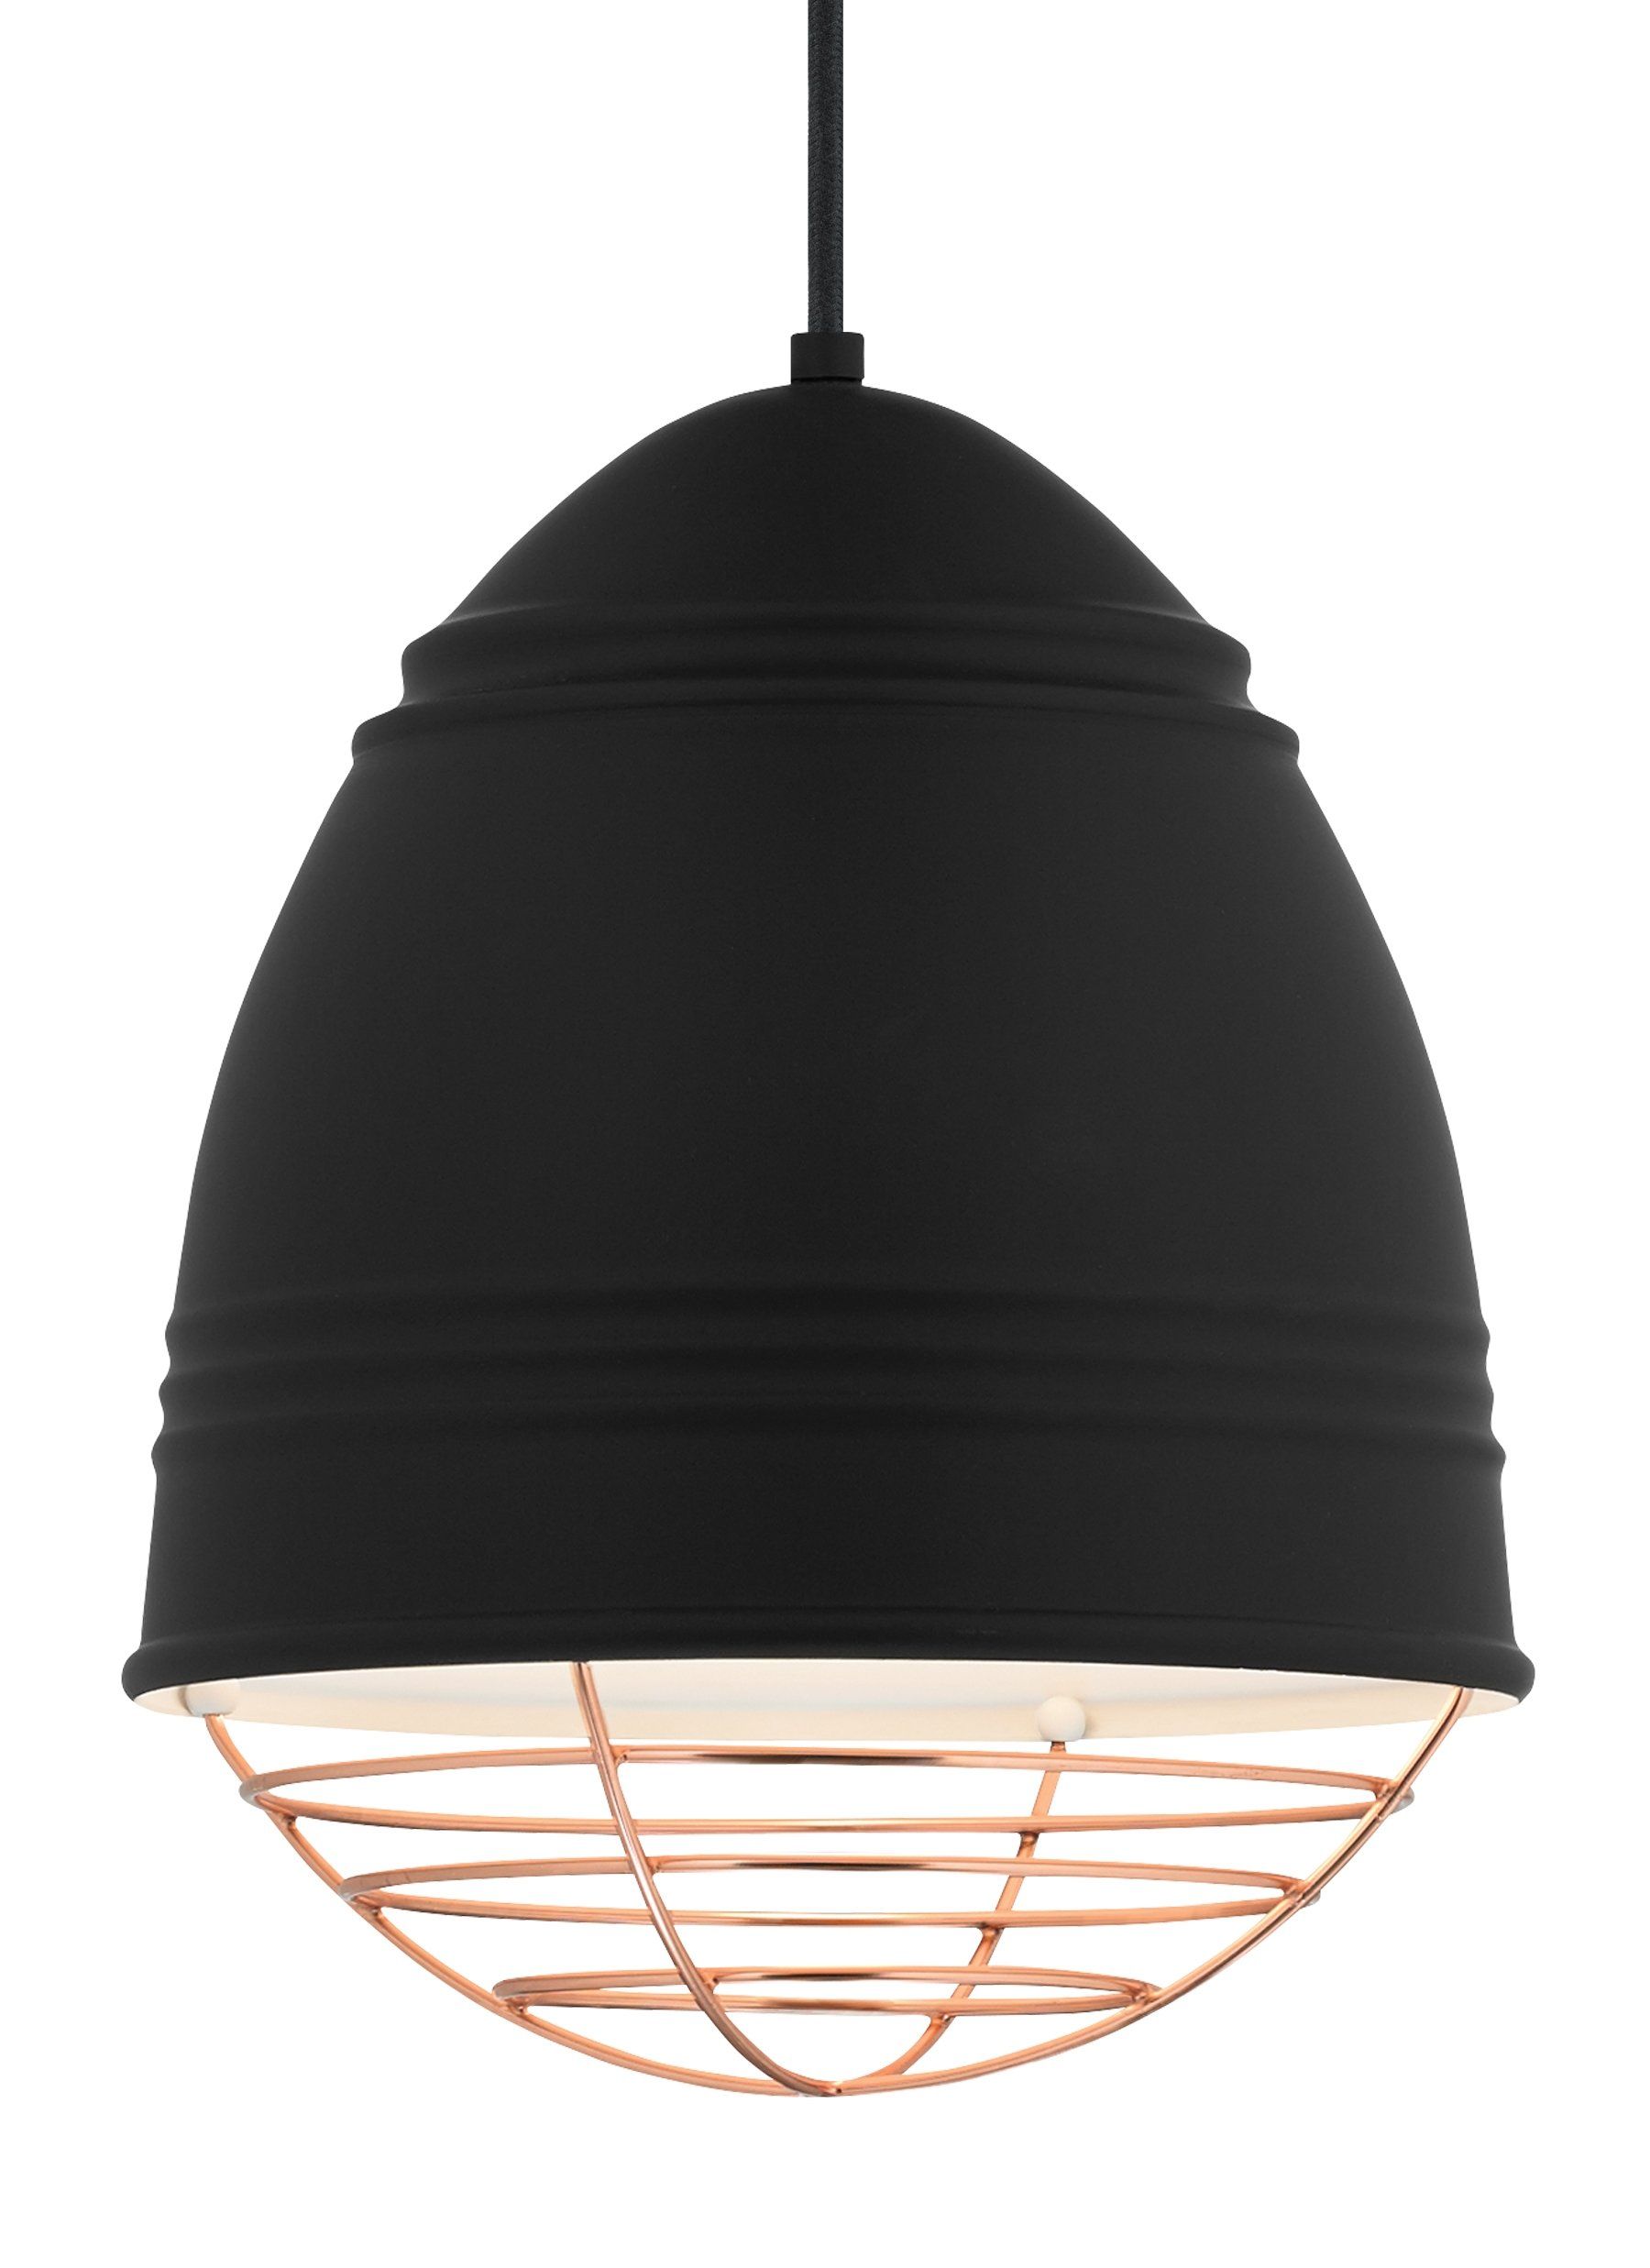 Loft 1 Light Bell Pendant For Ryker 1 Light Single Dome Pendants (Photo 27 of 30)